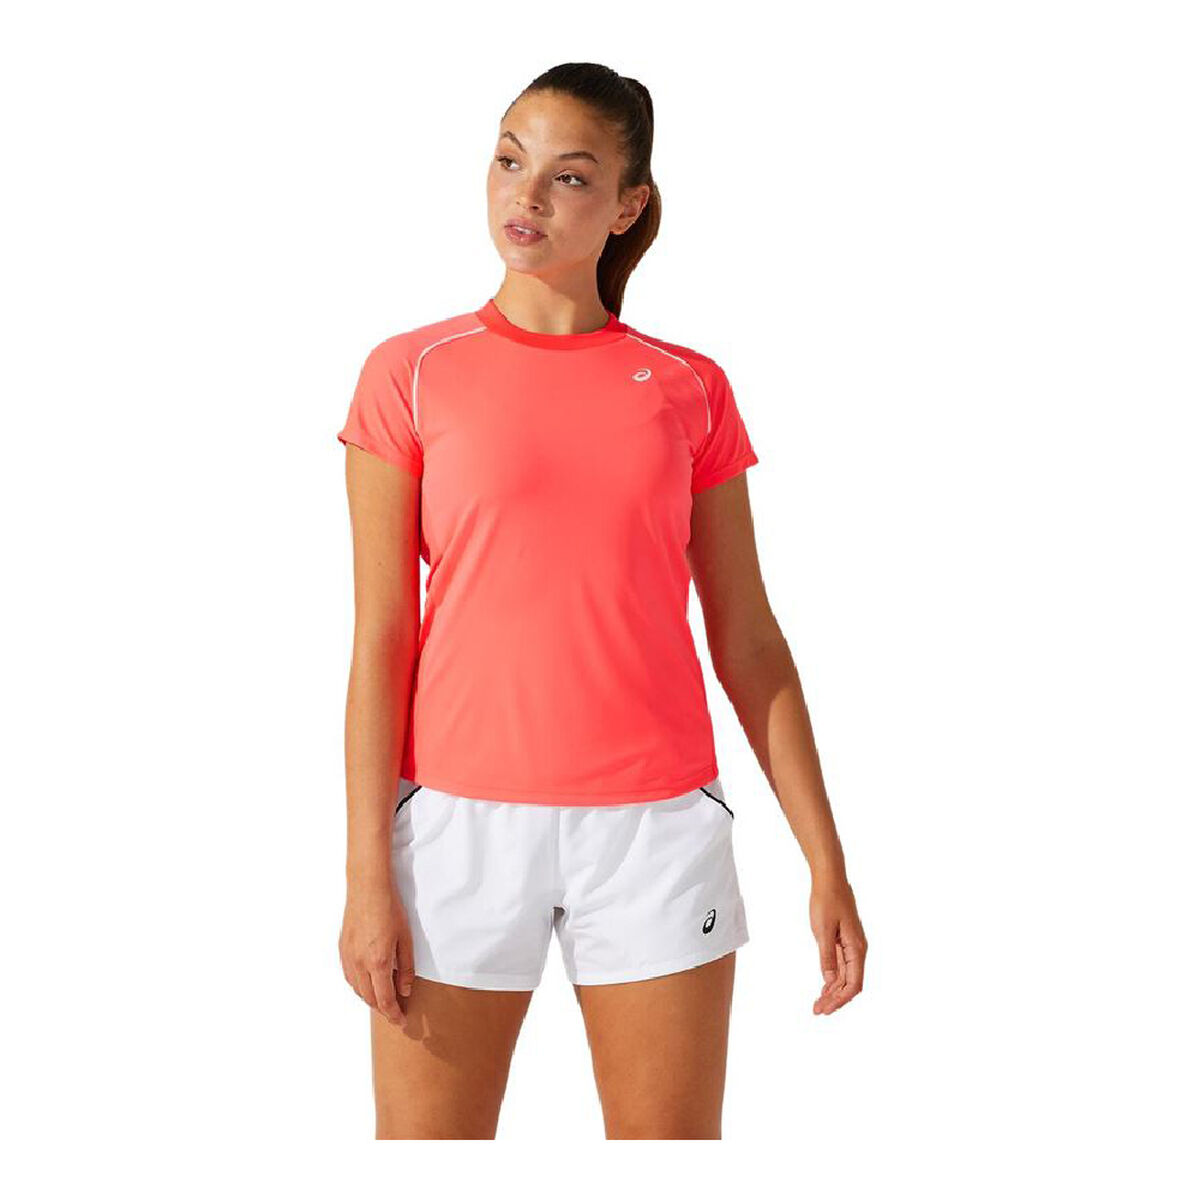 Osta tuote Naisten T-paita Asics Court Piping Oranssi Koralli (Koko: XS) verkkokaupastamme Korhone: Urheilu & Vapaa-aika 20% alennuksella koodilla VIIKONLOPPU